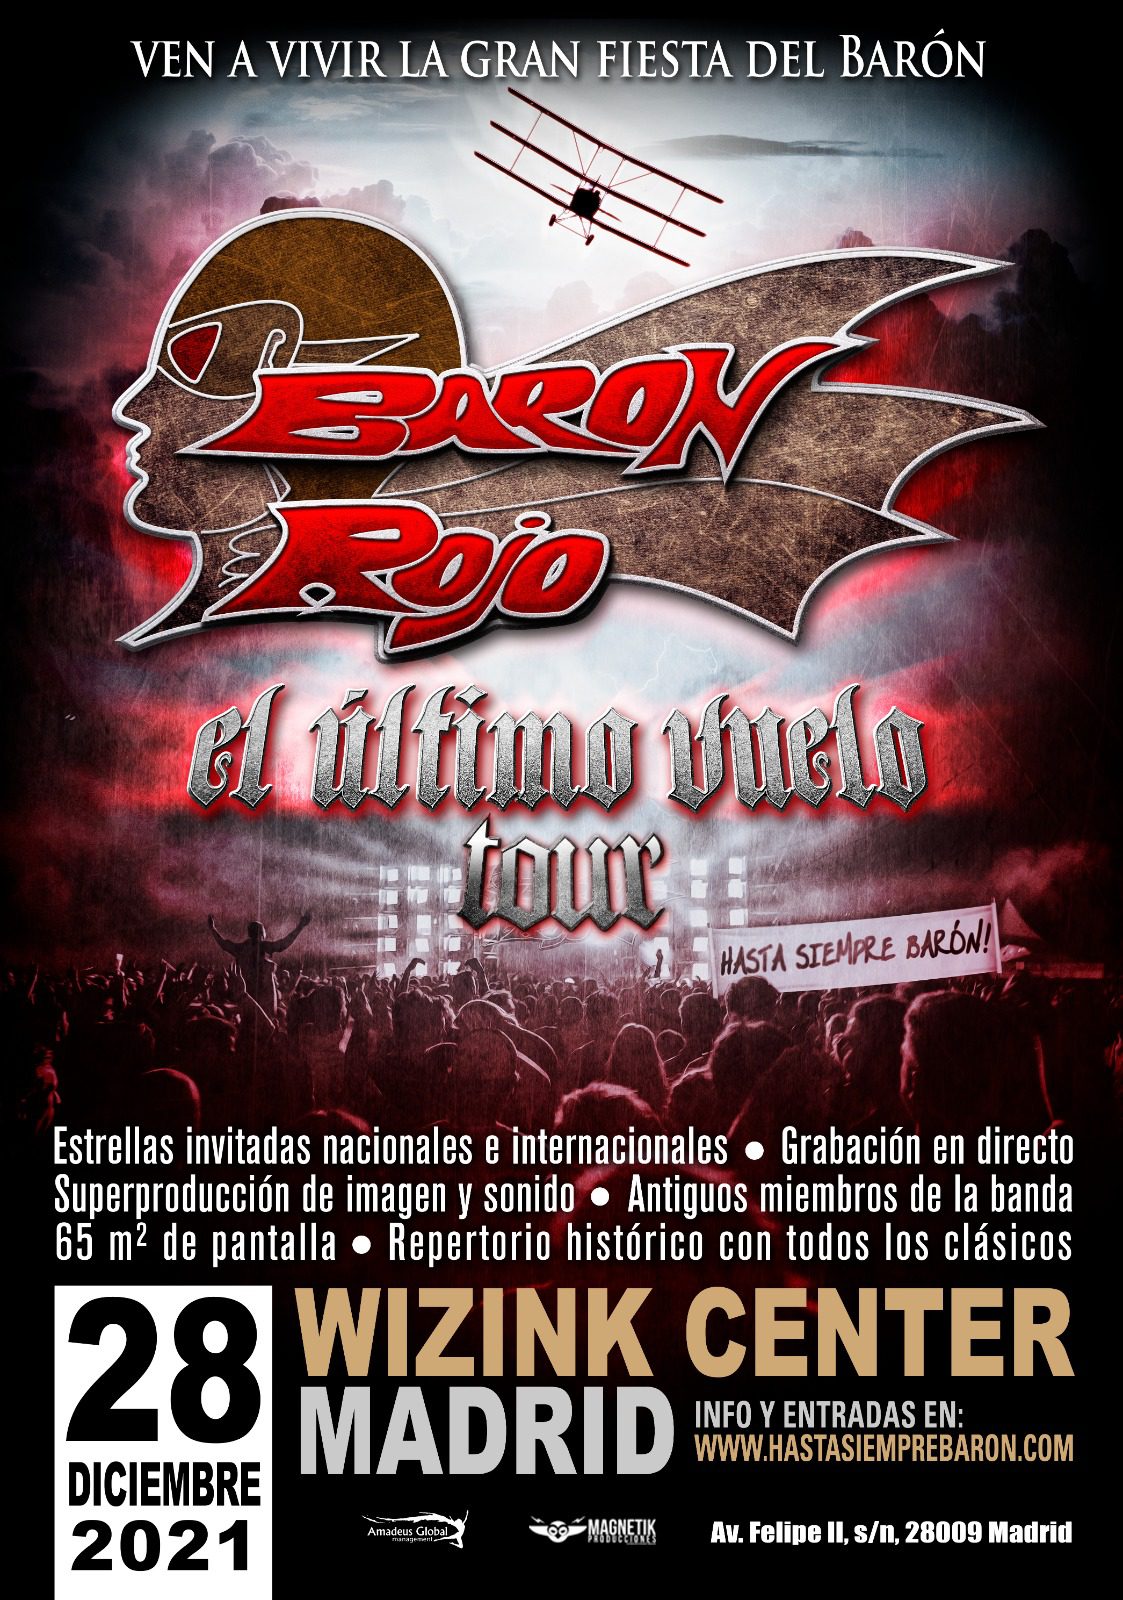 Barón Rojo darán el concierto más importante de su historia en el Wizink Center de Madrid